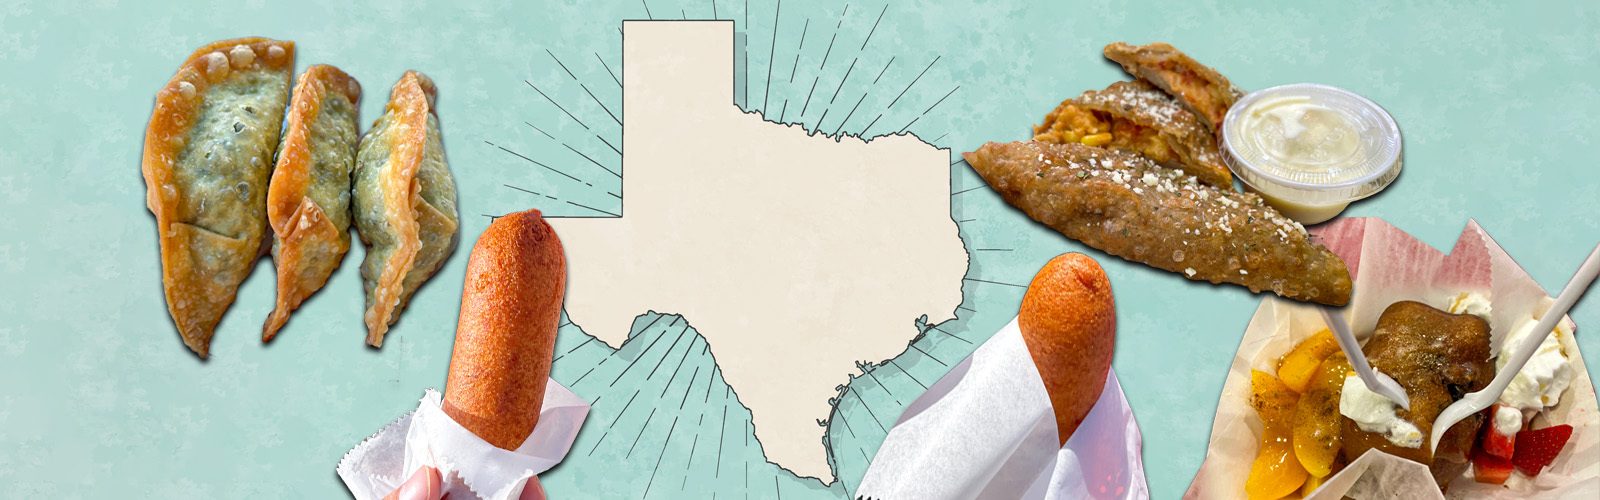 state fair texas food